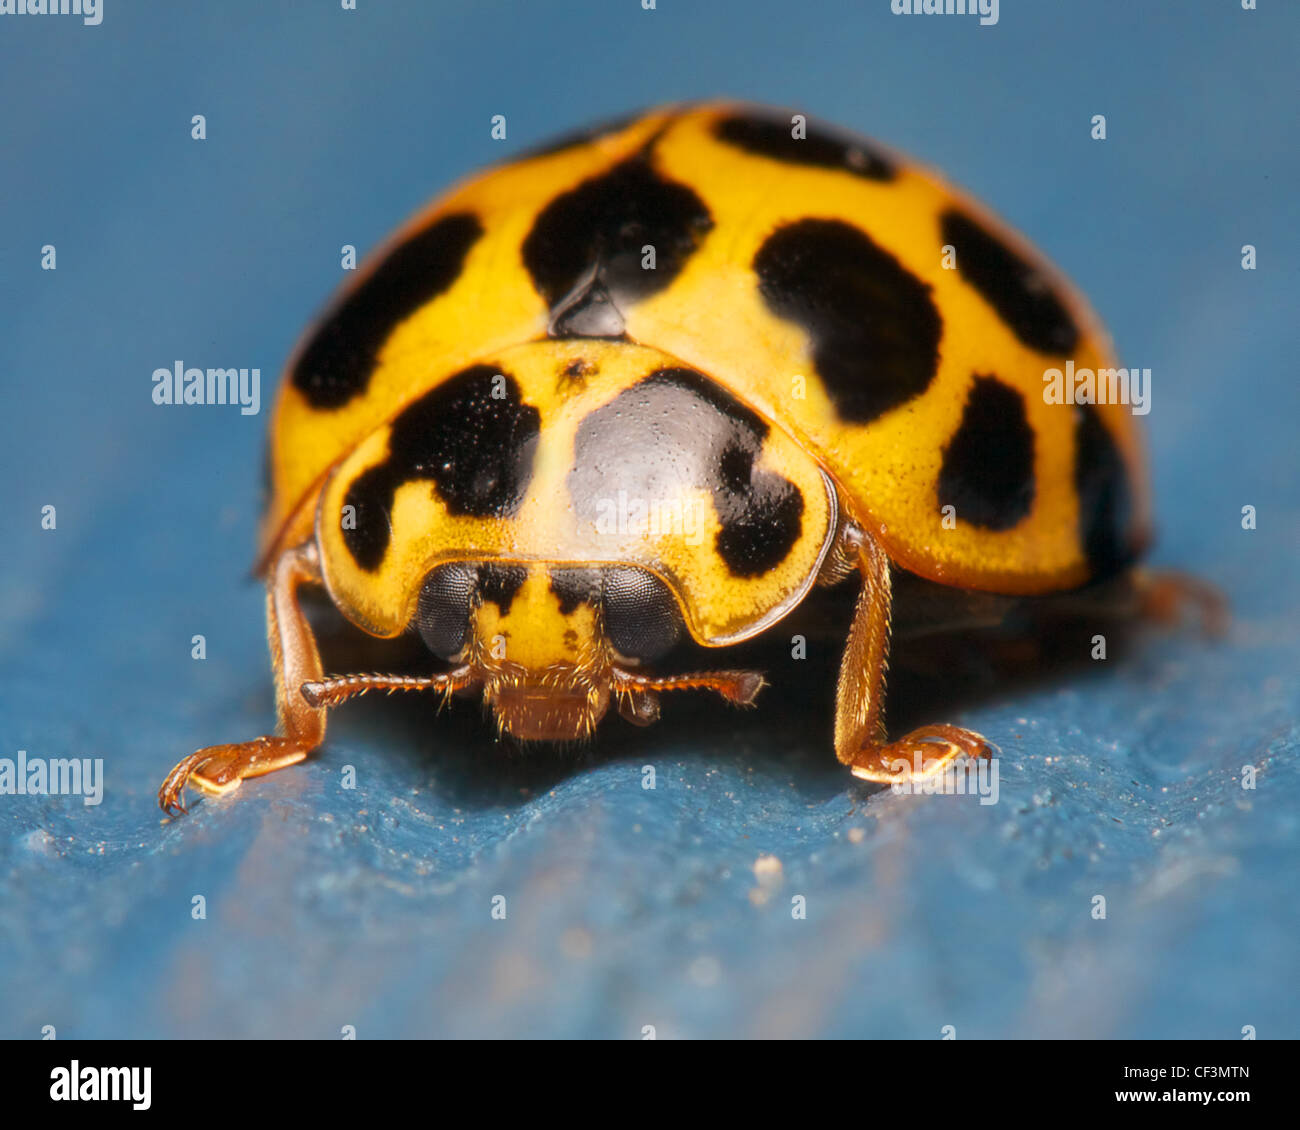 closeup of ladybug on blue Stock Photo